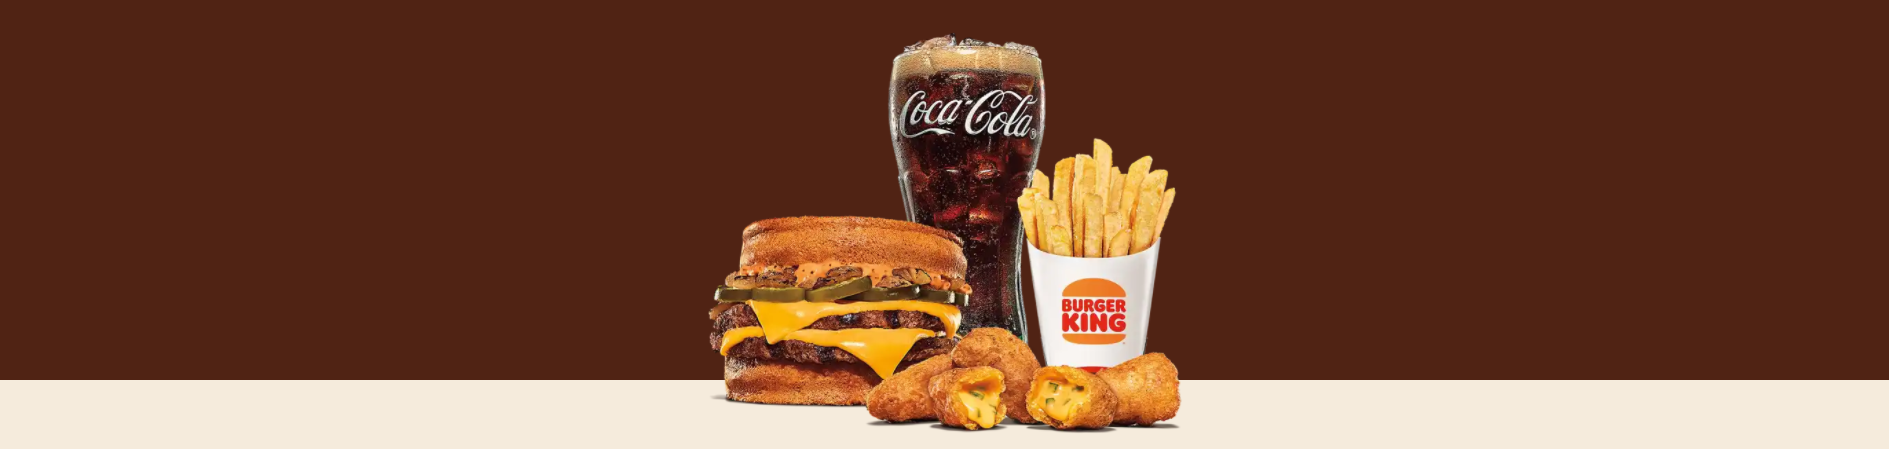 Burger King Deals 